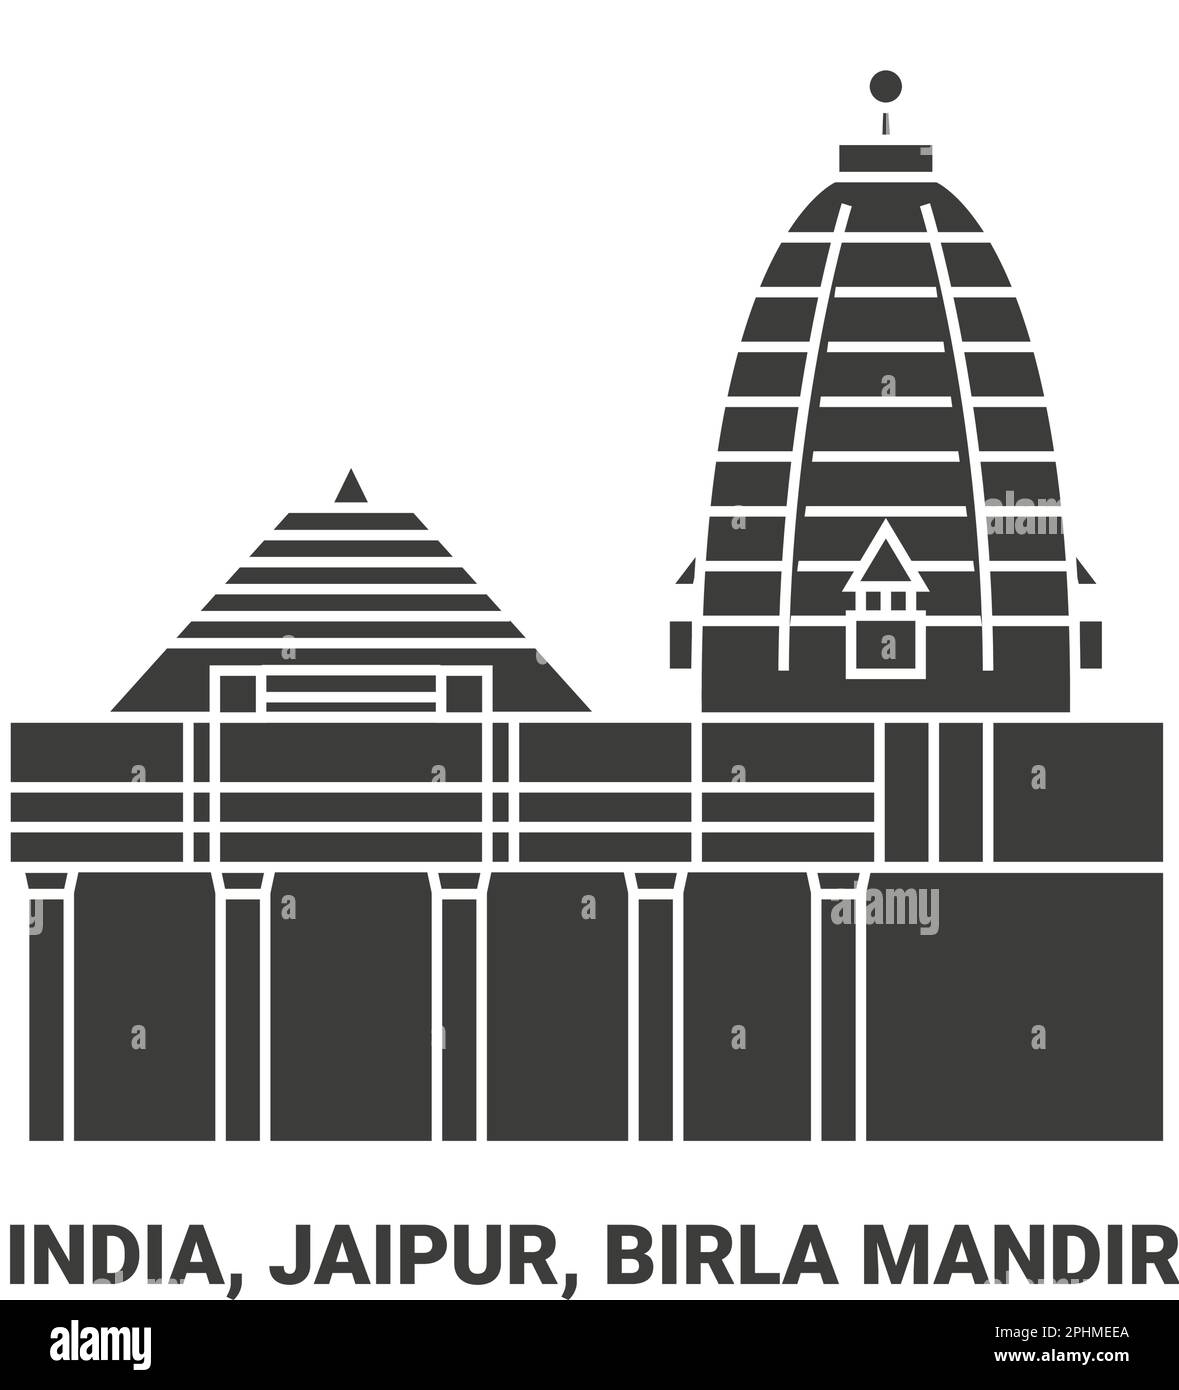 Indien, Jaipur, Birla Mandir, Reise-Wahrzeichen-Vektordarstellung Stock Vektor